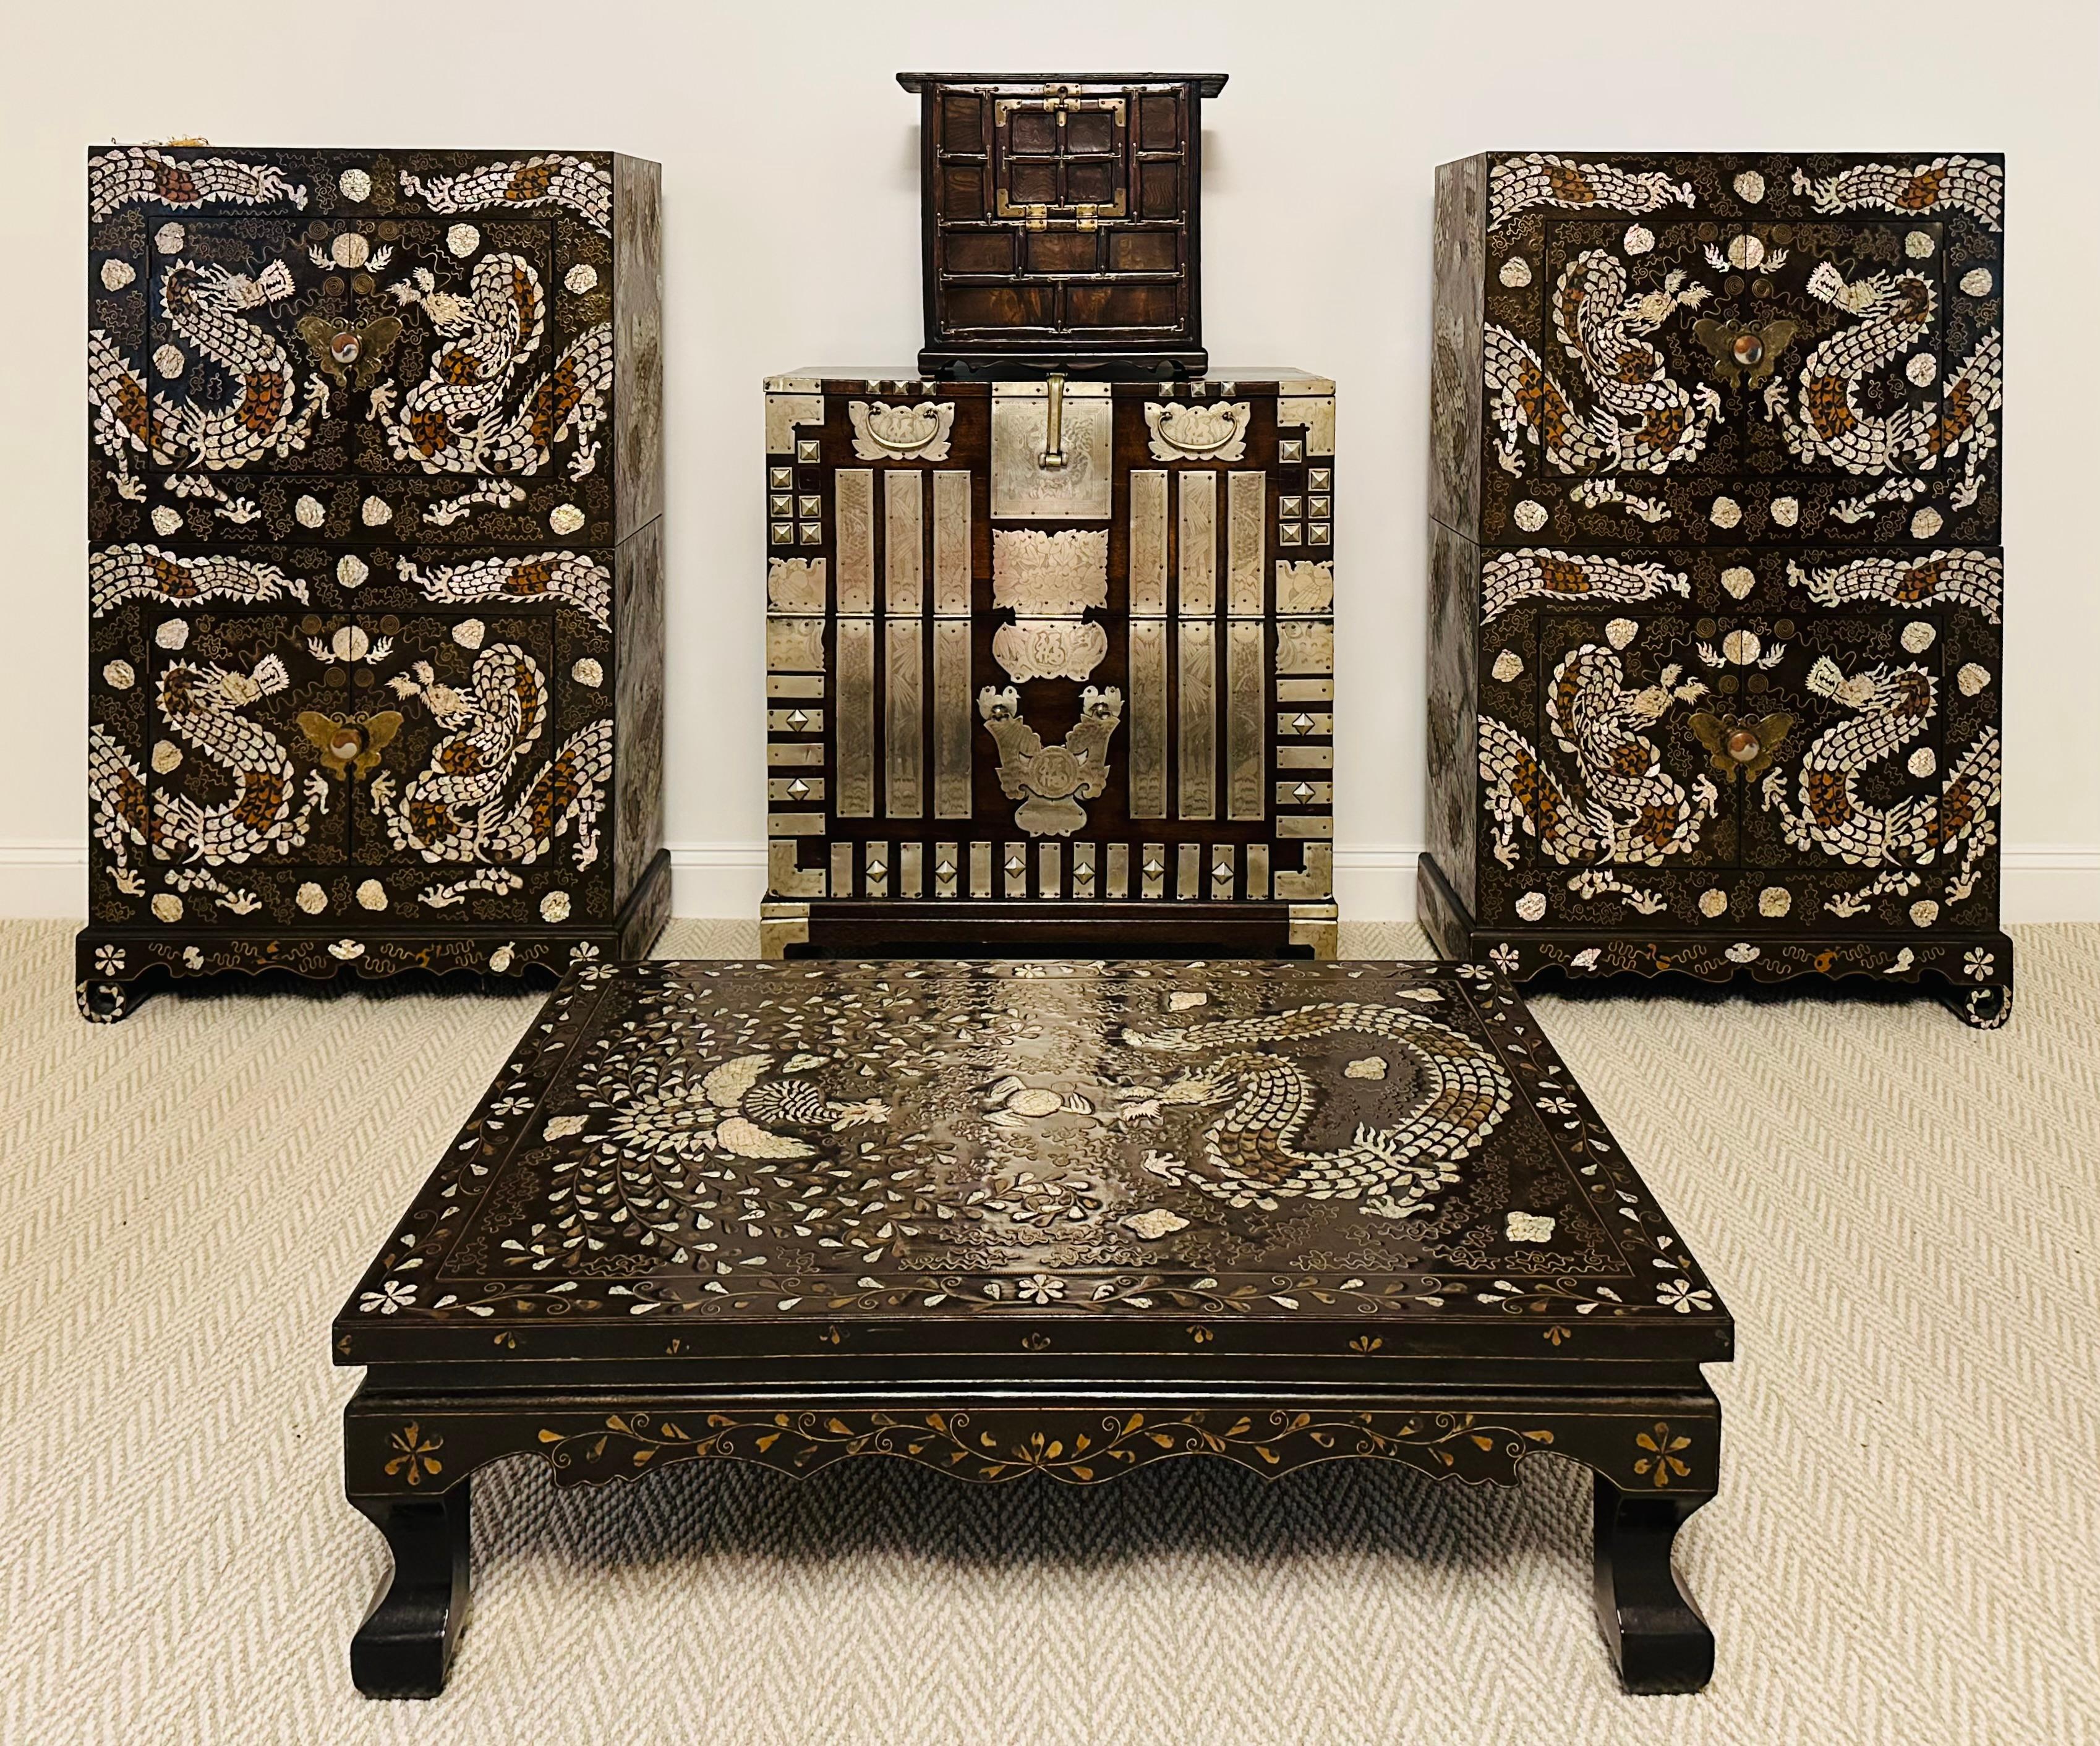 Ein koreanischer, schwarz lackierter Holztisch mit aufwendigen Intarsienarbeiten um die späte Joseon-Dynastie (Ende des 19. bis Ende des 20. Jahrhunderts). Der niedrige Tisch, der von leicht gebogenen Beinen getragen wird, wurde traditionell auf den